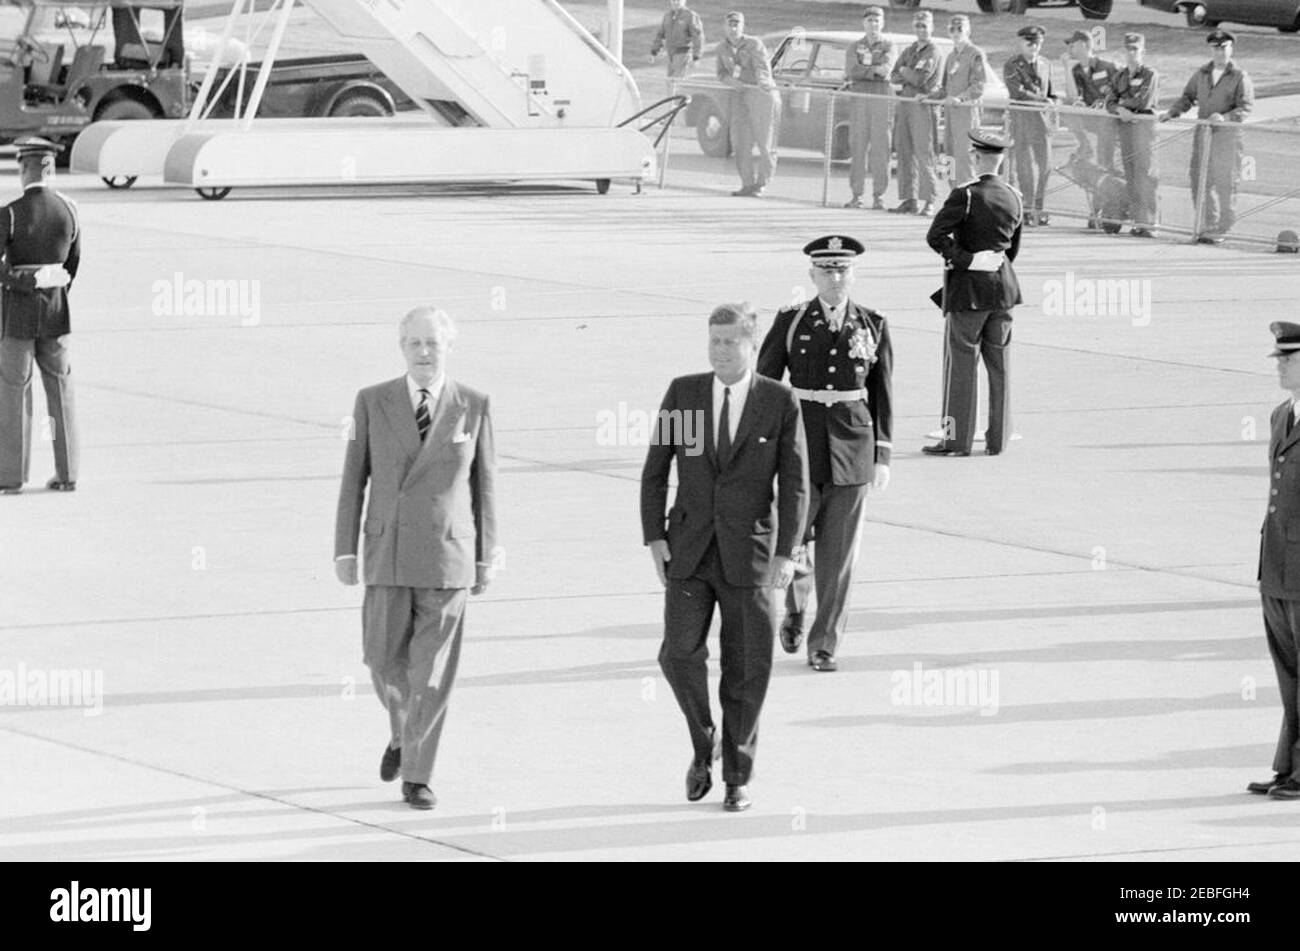 Ankunftszeremonie für Harold Macmillan, Premierminister von Großbritannien, 4:50pm Uhr. Präsident John F. Kennedy geht mit Premierminister von Großbritannien, Harold Macmillan (links), während der Ankunftszeremonien zu Ehren von Premierminister Macmillan. Kommandant der Truppen, Oberstleutnant Charles P. Murray, Jr., geht hinter Präsident Kennedy. Andrews Air Force Base, Maryland. Stockfoto